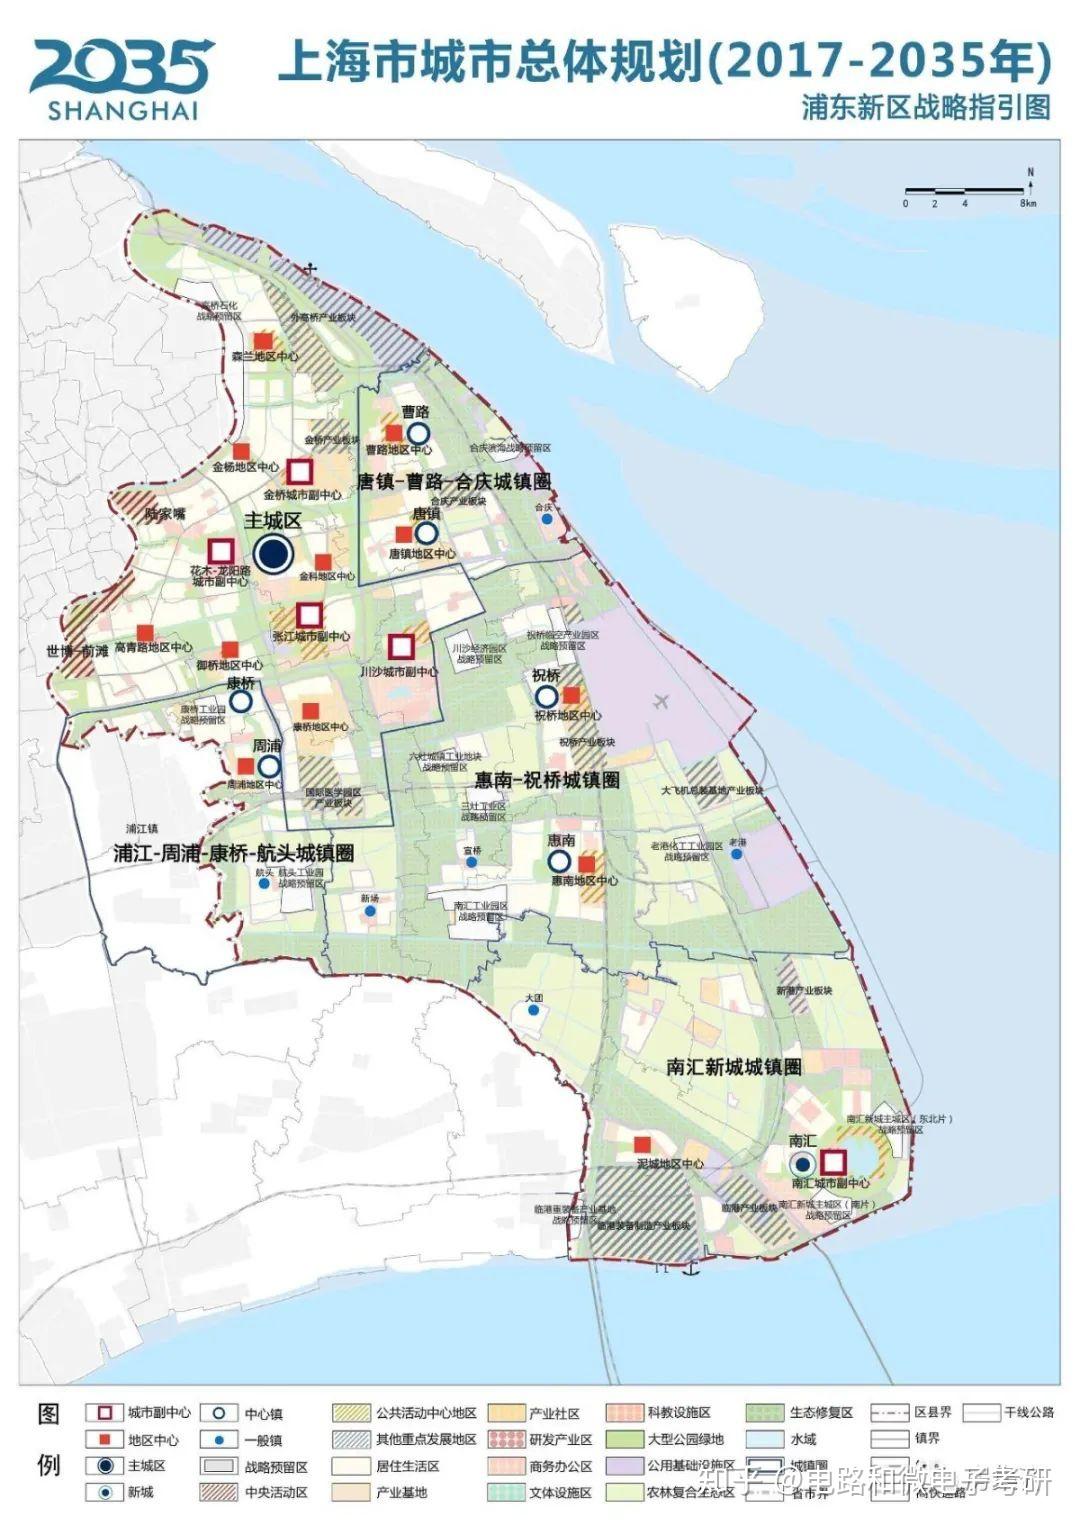 张江科学城是包含了地理意义上的张江镇的行政区划,摘录一段百度百科